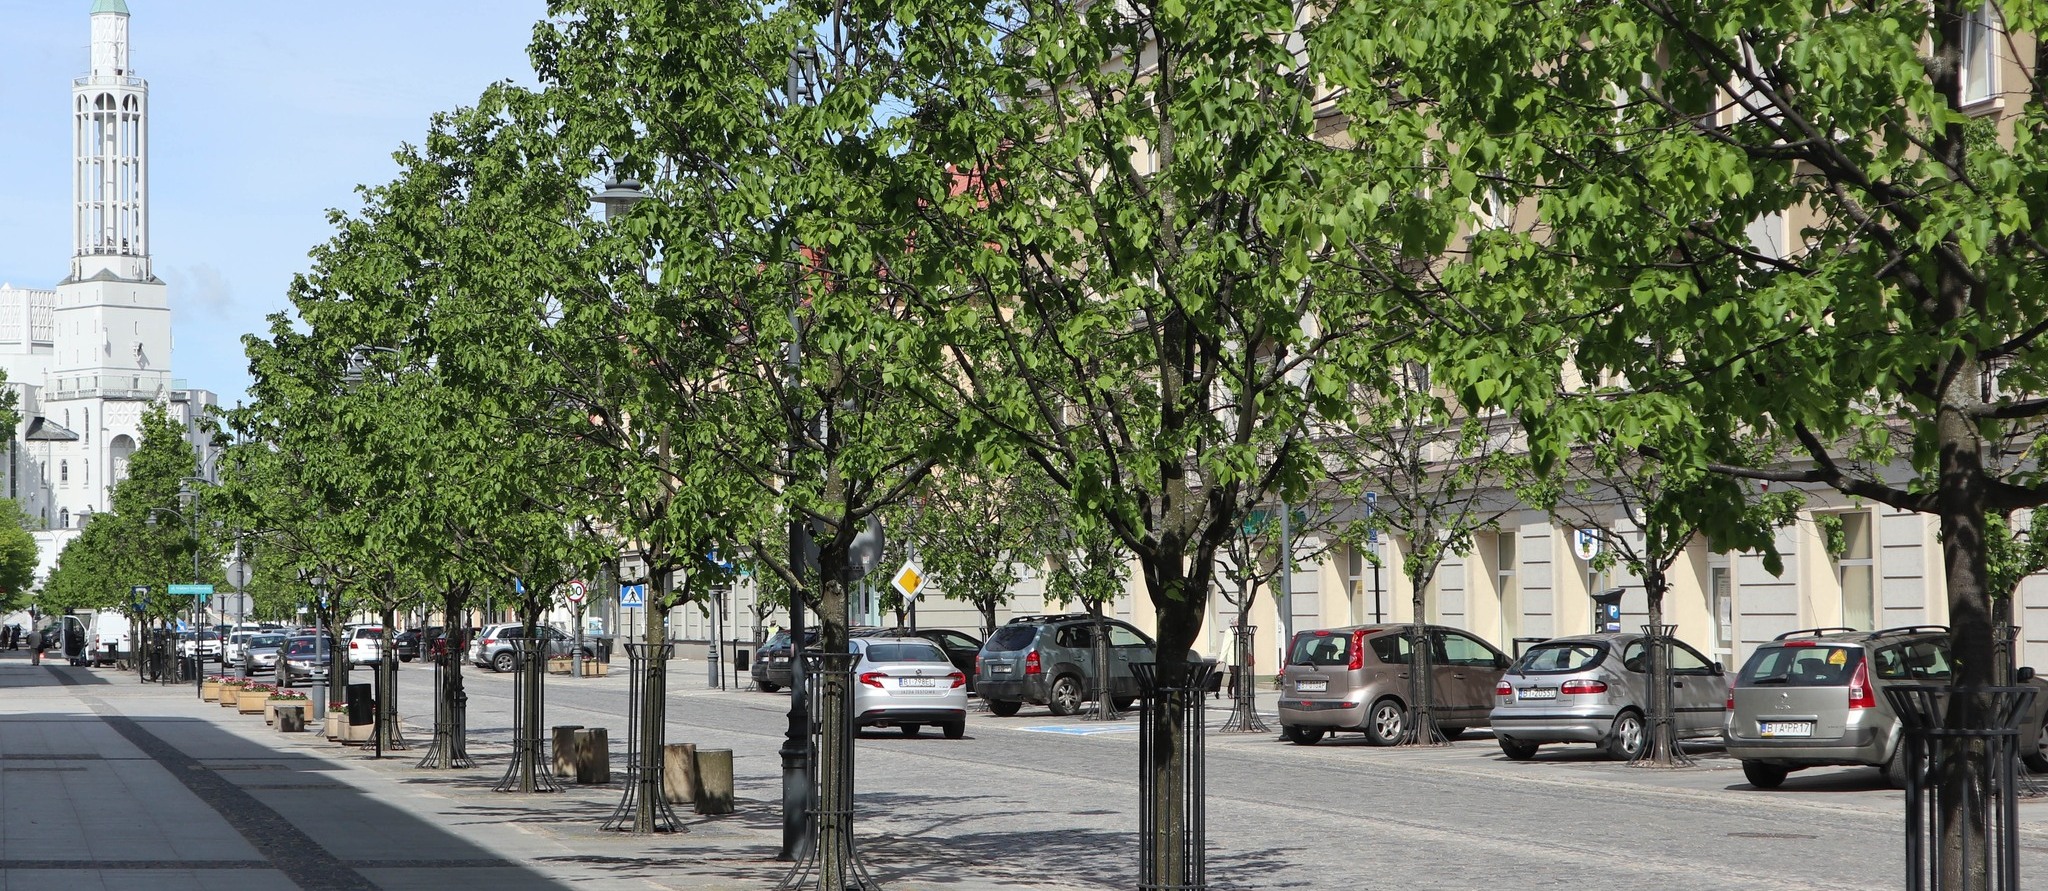 Drzewa - lipy rosnące wzdłuż ulicy Lipowej